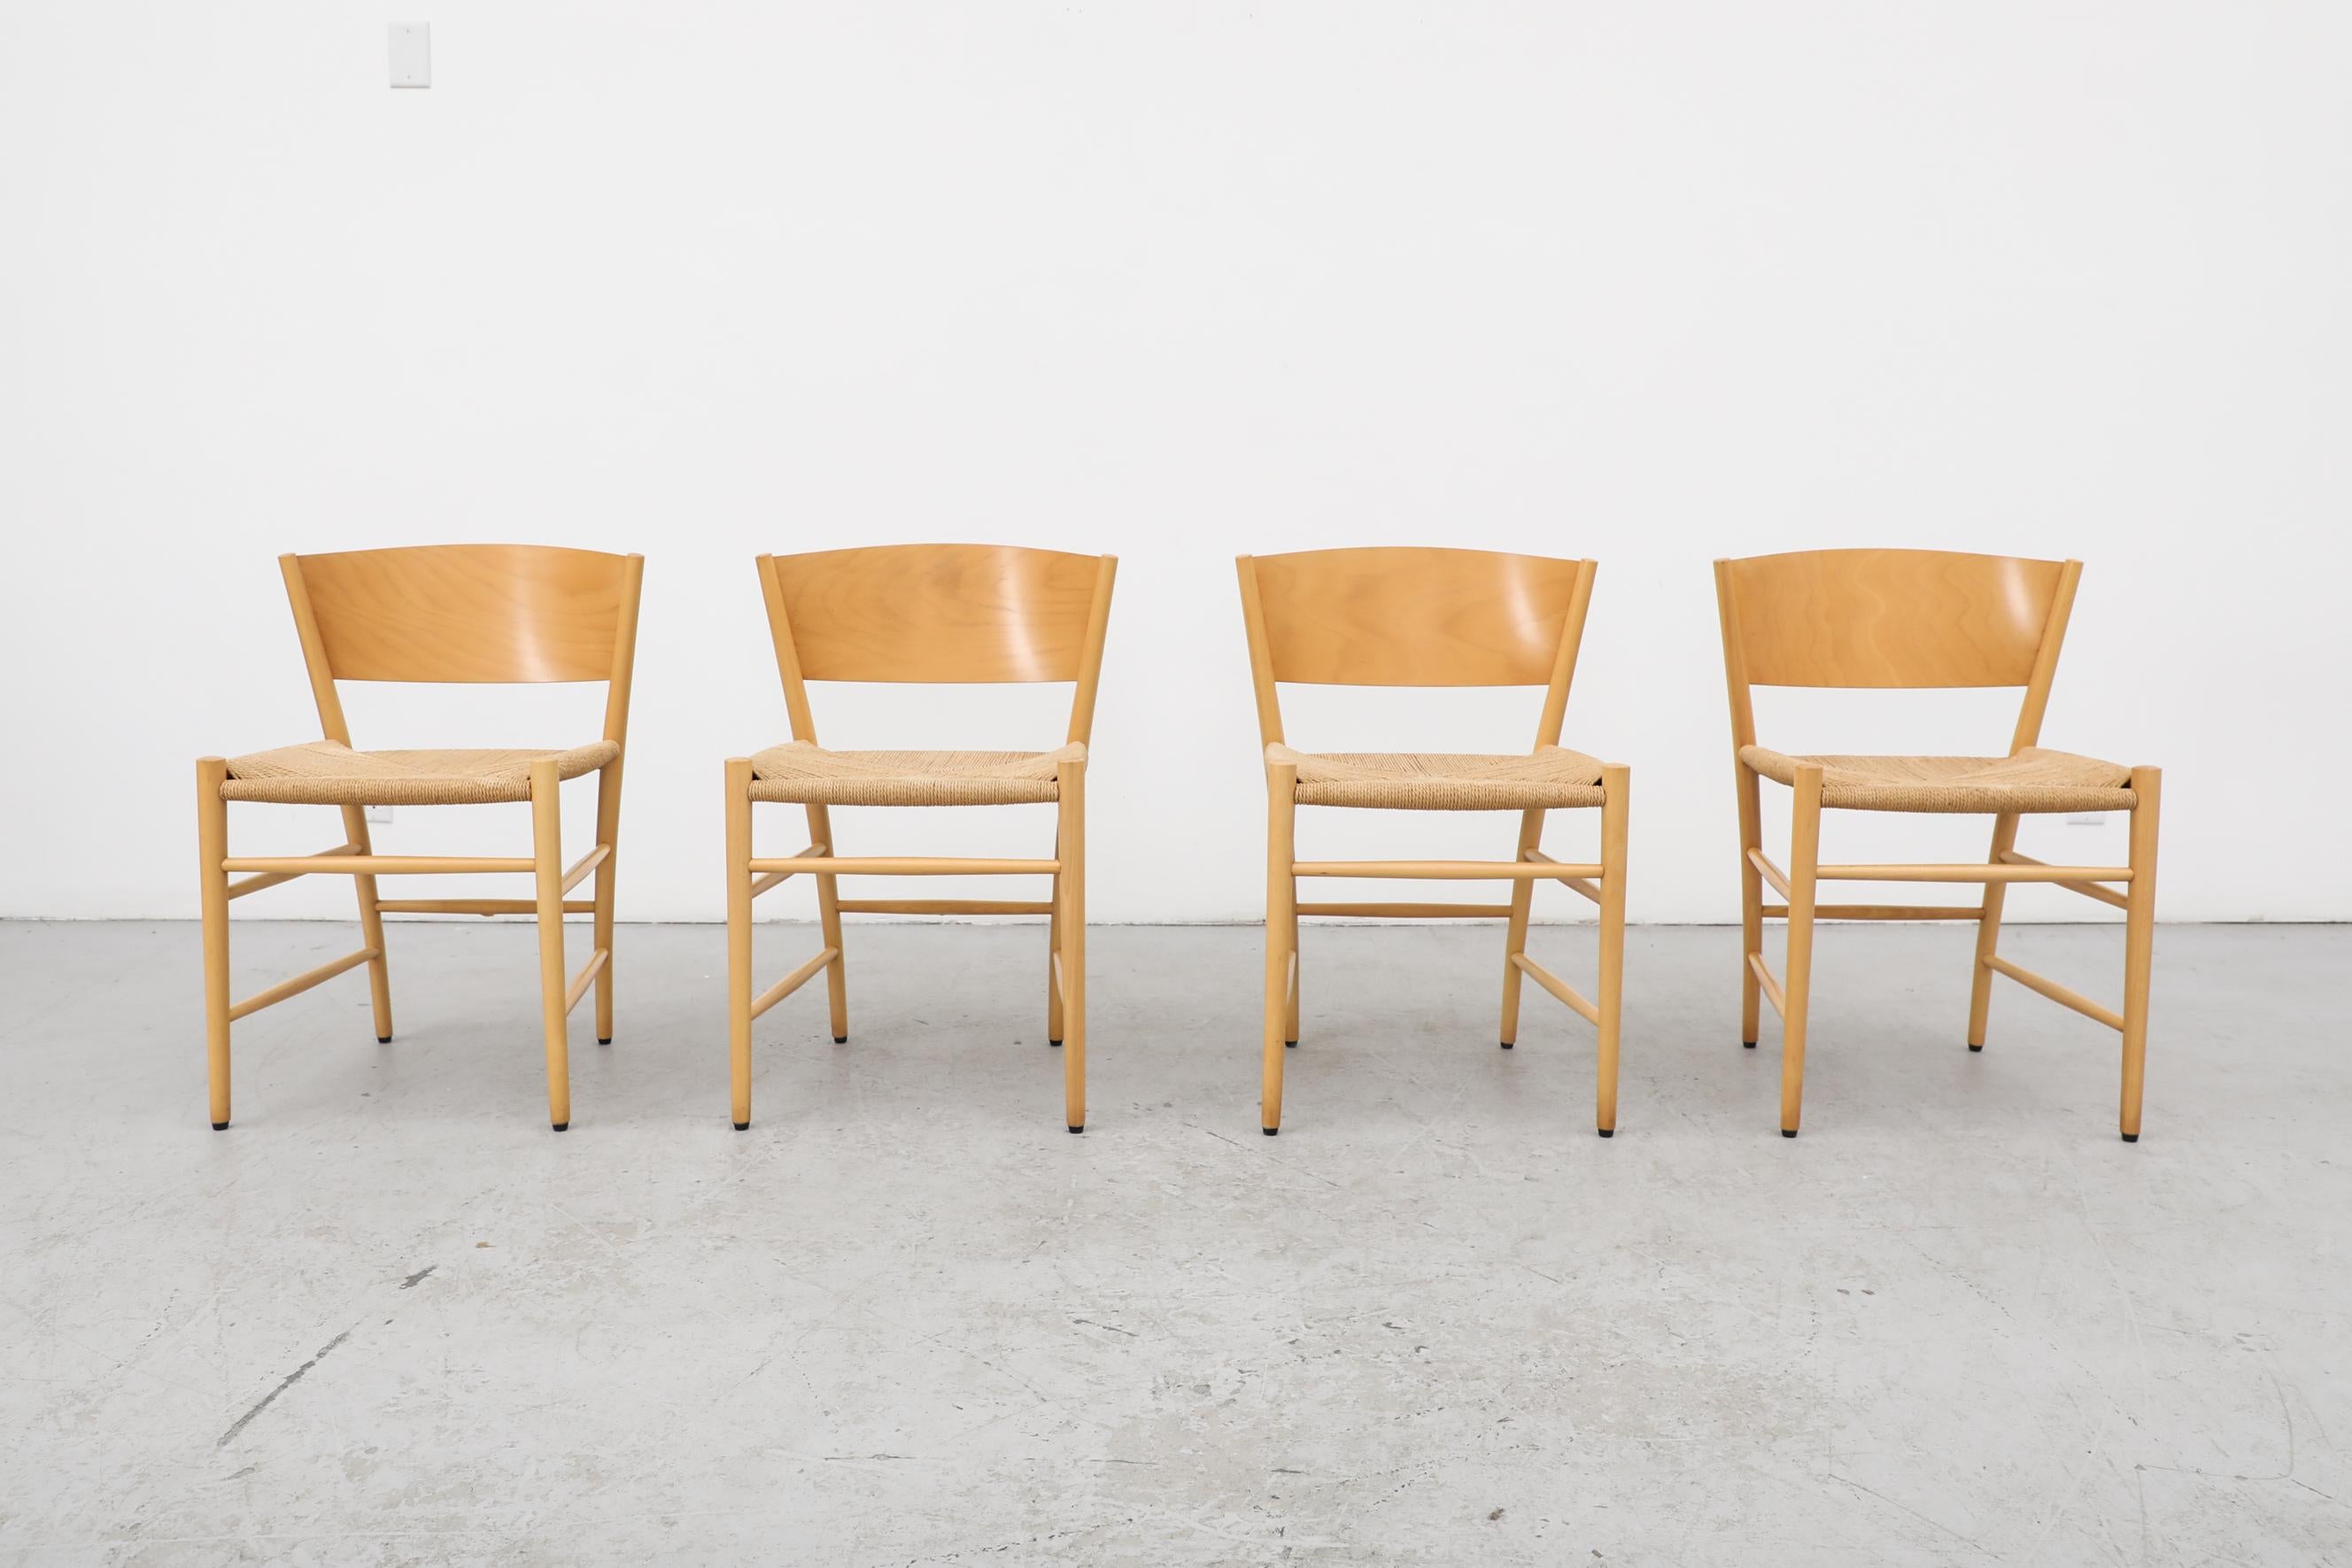 4 dänische 'Jive'-Stühle aus den 1990er Jahren von Tom Stepp für Kvist Møbler. Die Stühle haben geflochtene Sitze und Gestelle aus Birke. Originaler Zustand mit sichtbaren Abnutzungserscheinungen und Patina, die dem Alter und dem Gebrauch